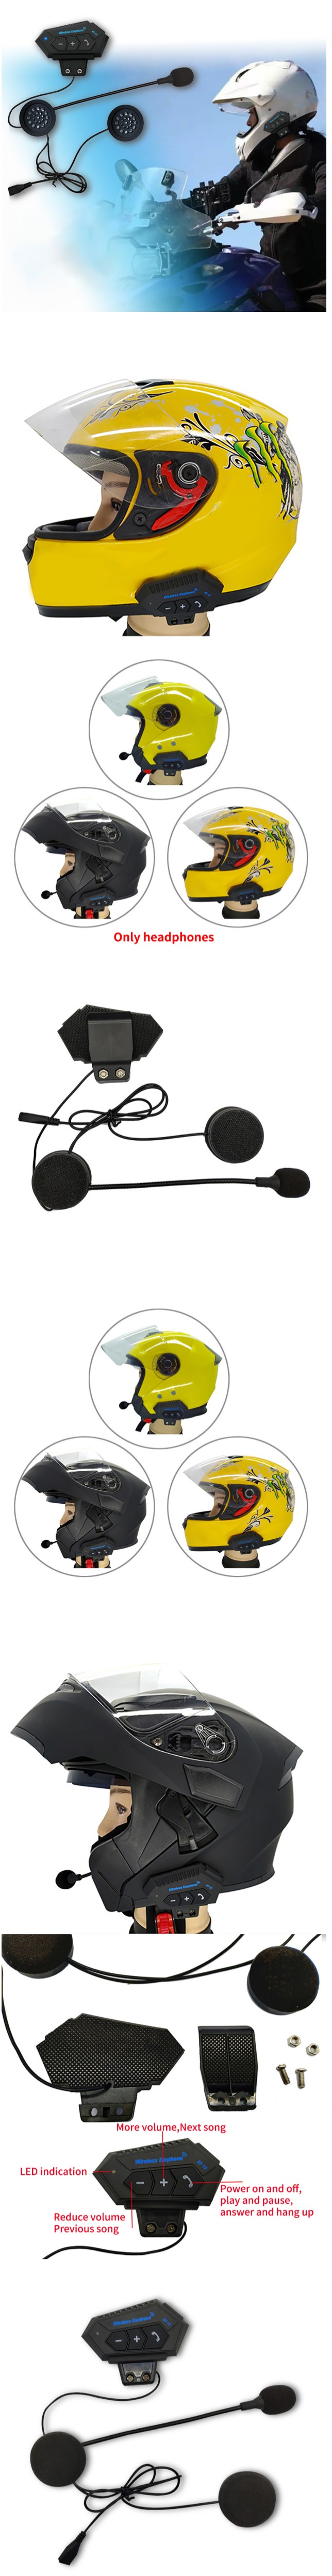 Helmet BT Headset, Helmet Bluetooth Headset, Helmet Wireless Headphone, Helmet Wireless Headset, Wireless Earphone BT-12, Motorcycle Wireless Headset,